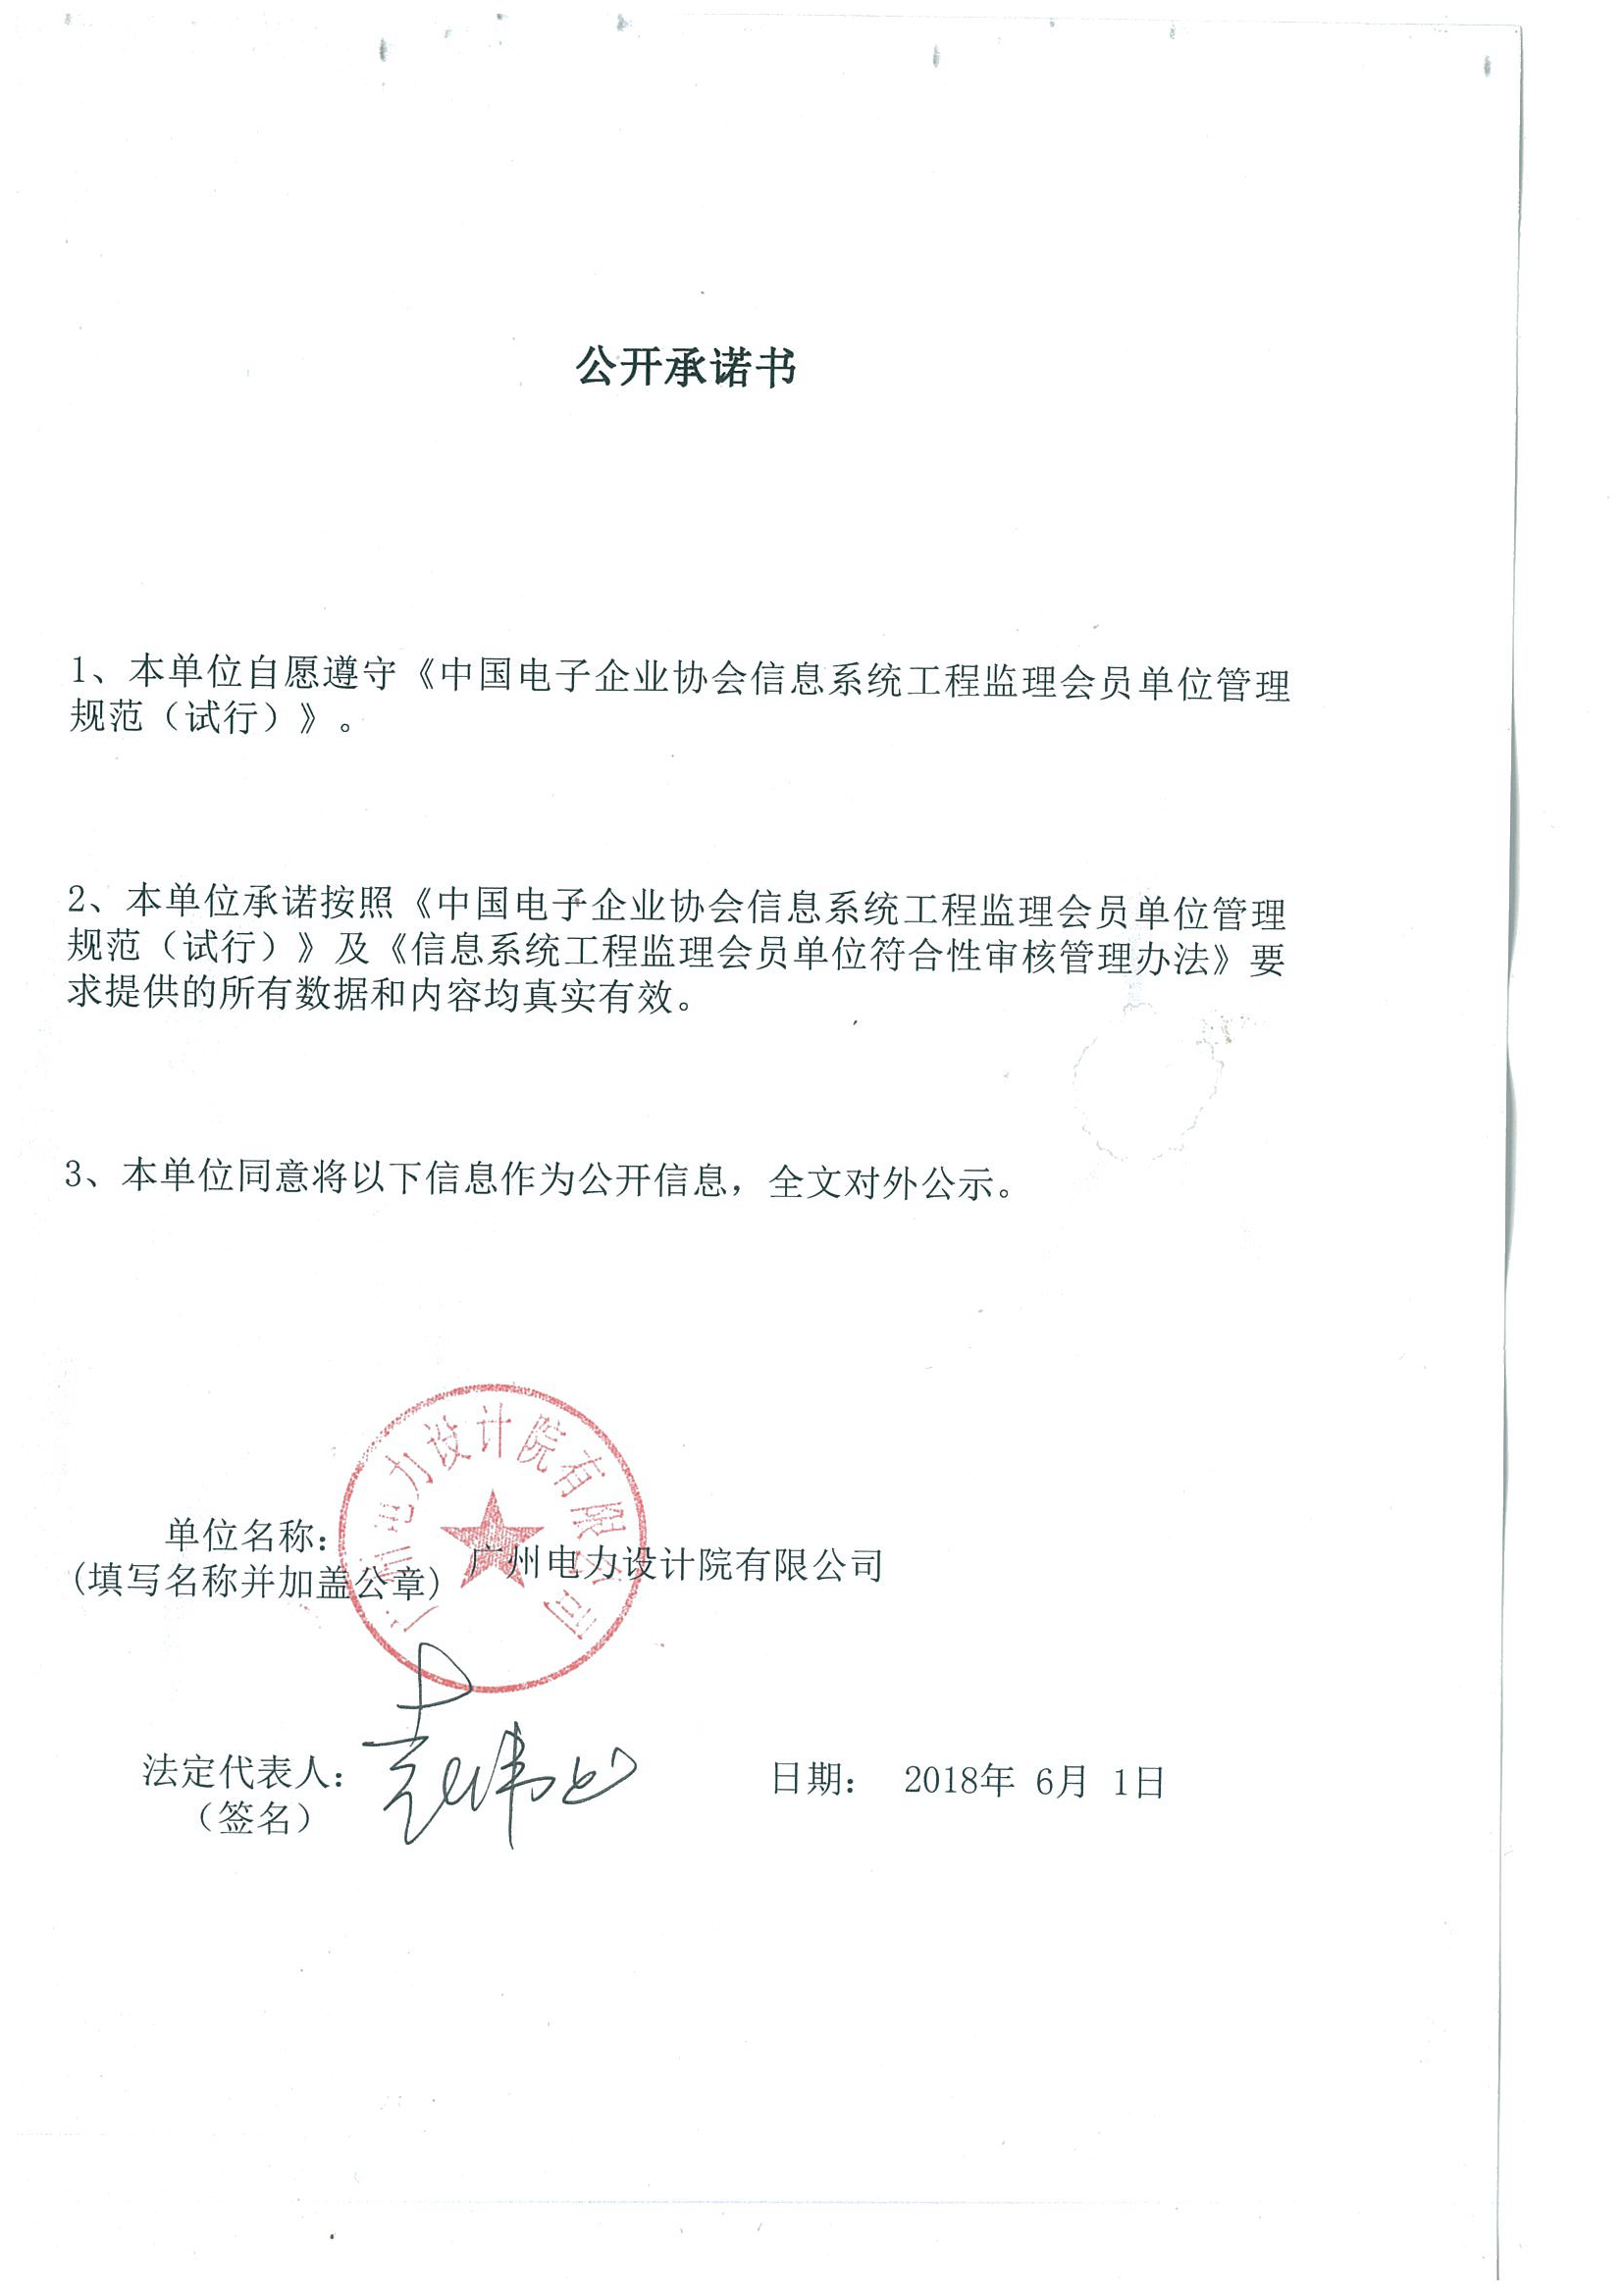 广州电力设计院有限公司信息系统工程监理资质证书